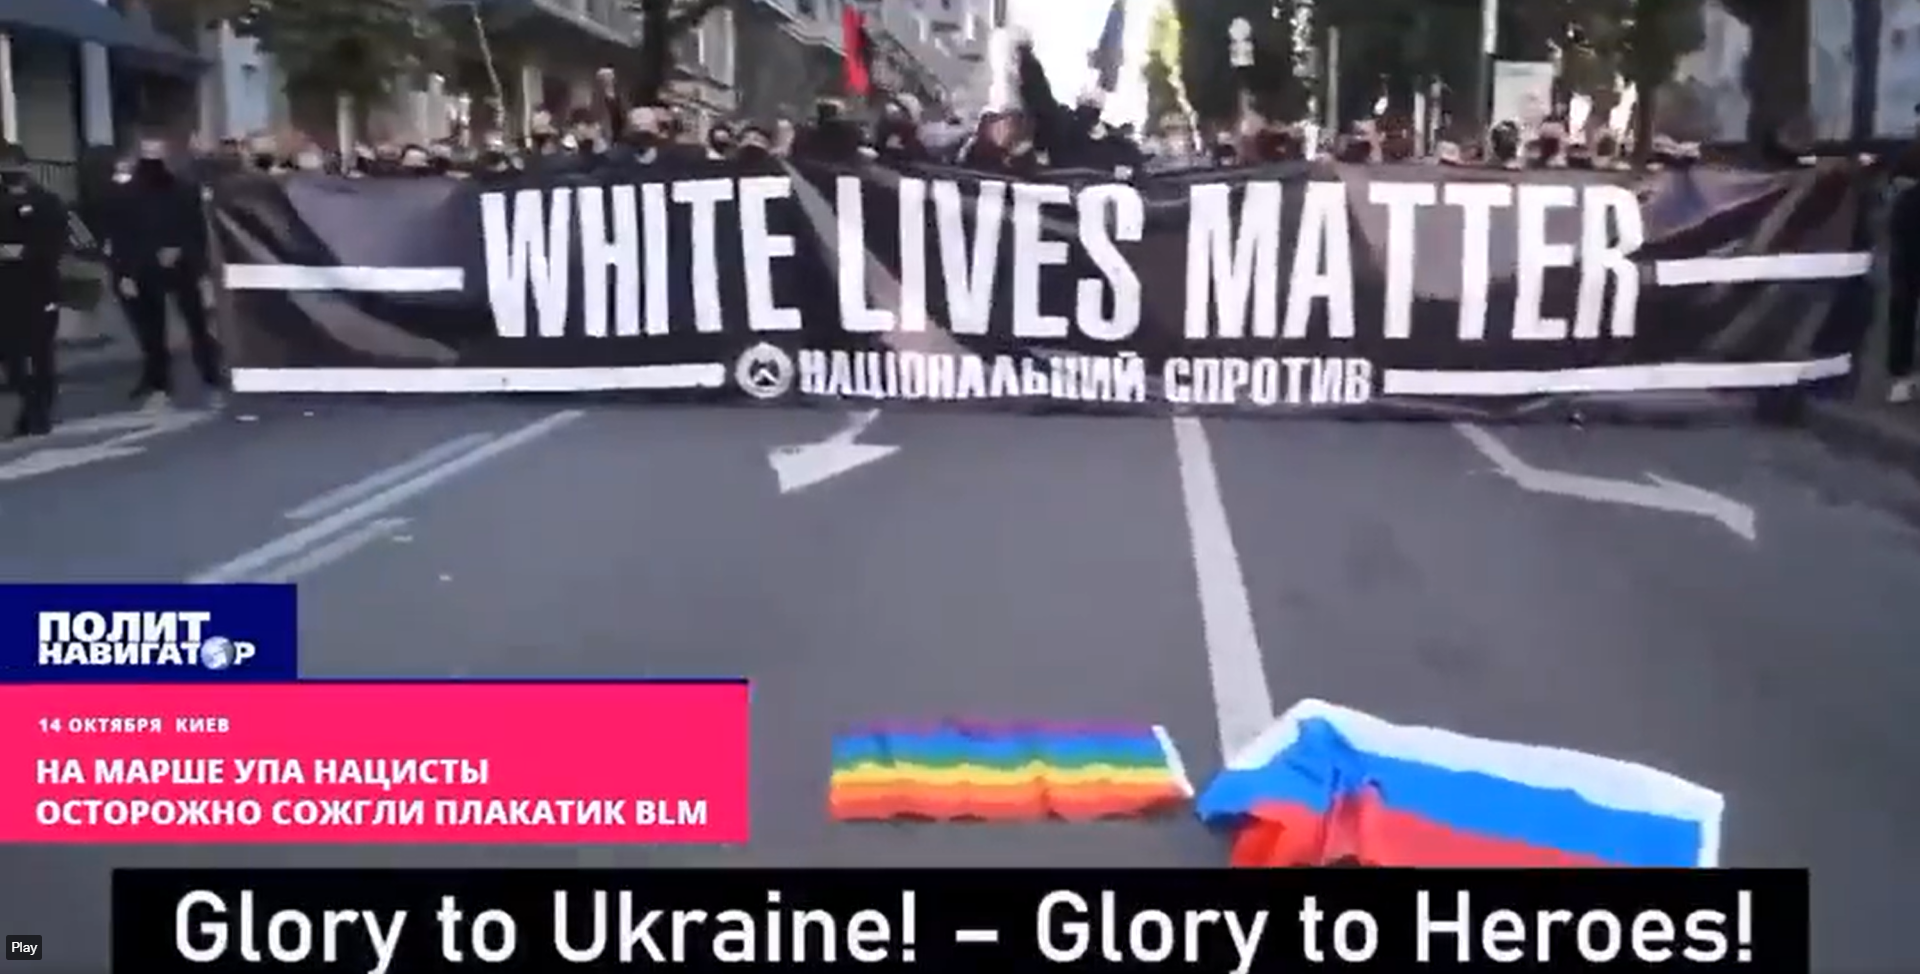 White Lives Matter More in Ukraine